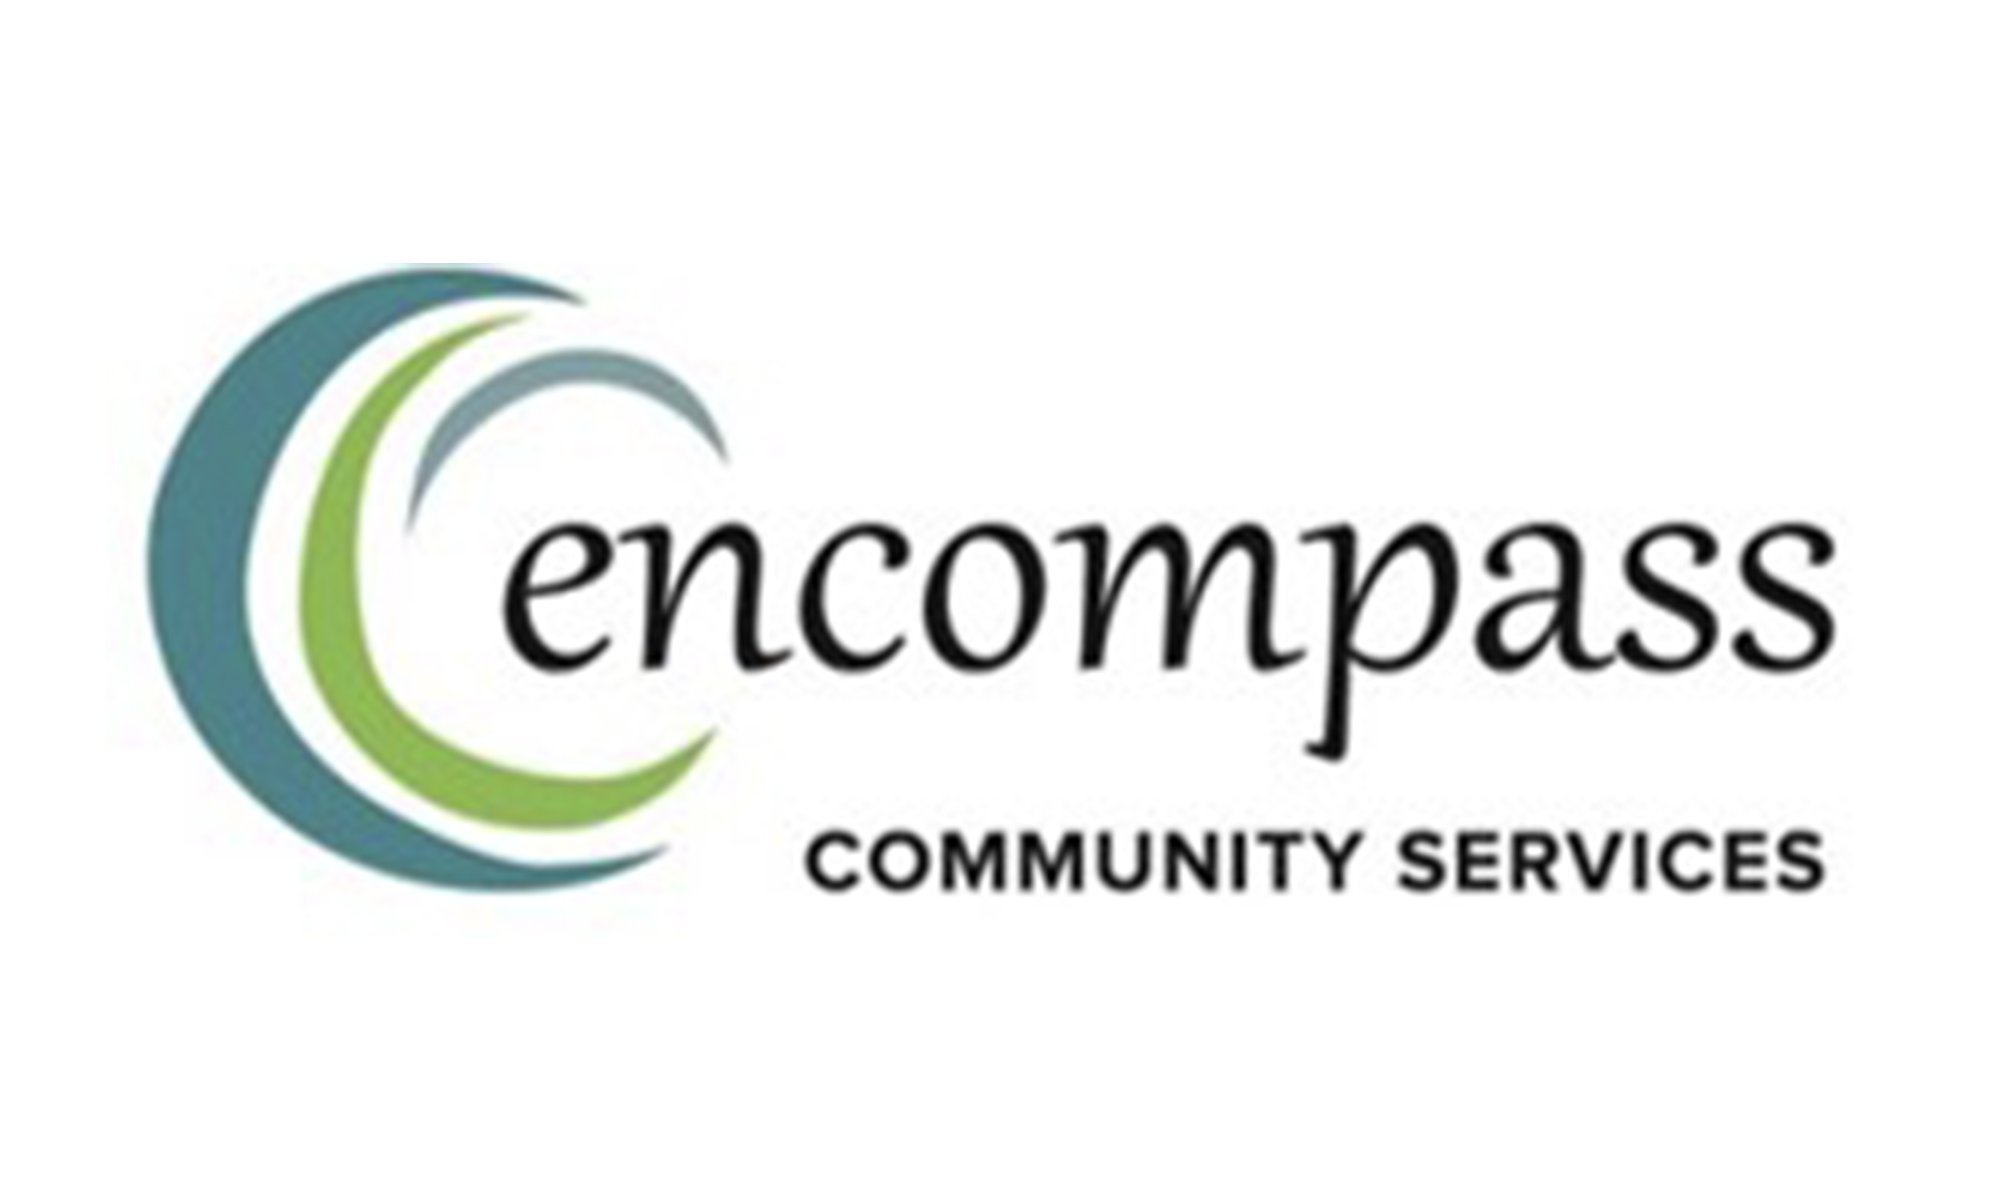 Servicios comunitarios Encompass